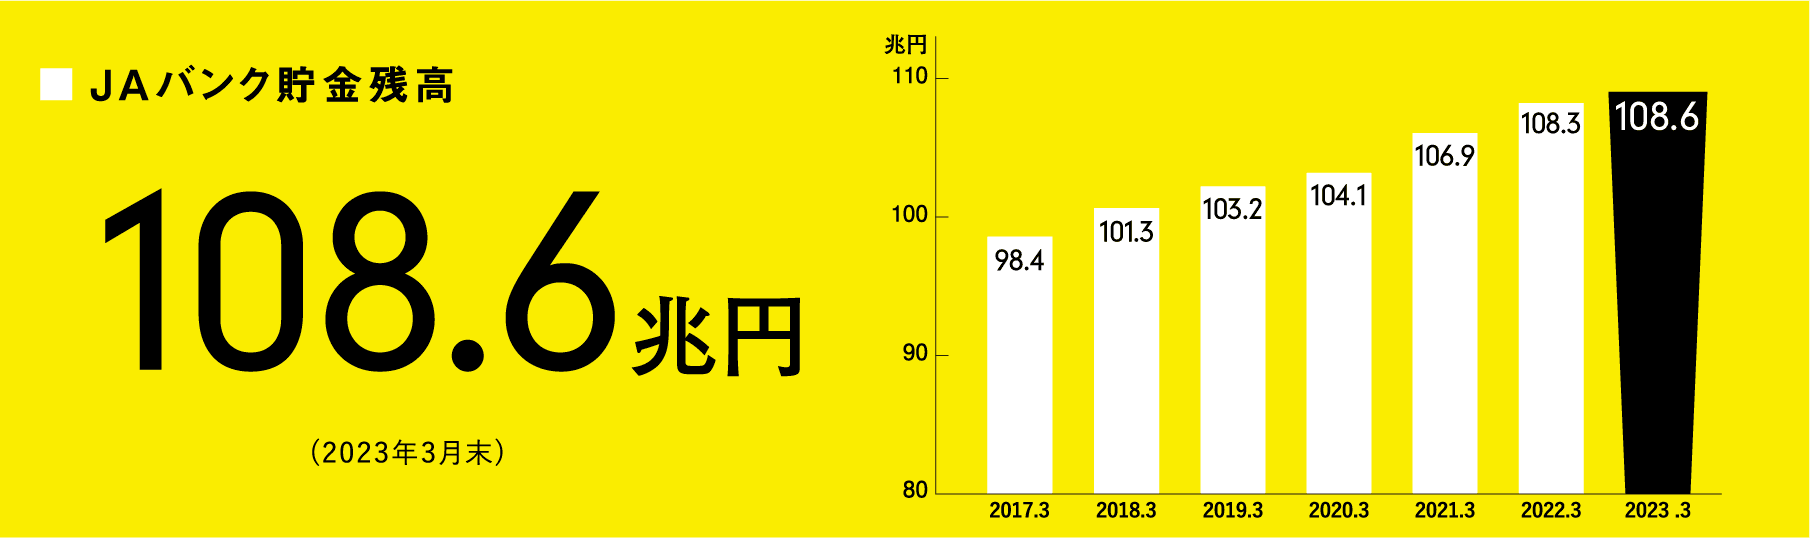 JAバンク貯金残高 108.6兆円 (2023年3月末)